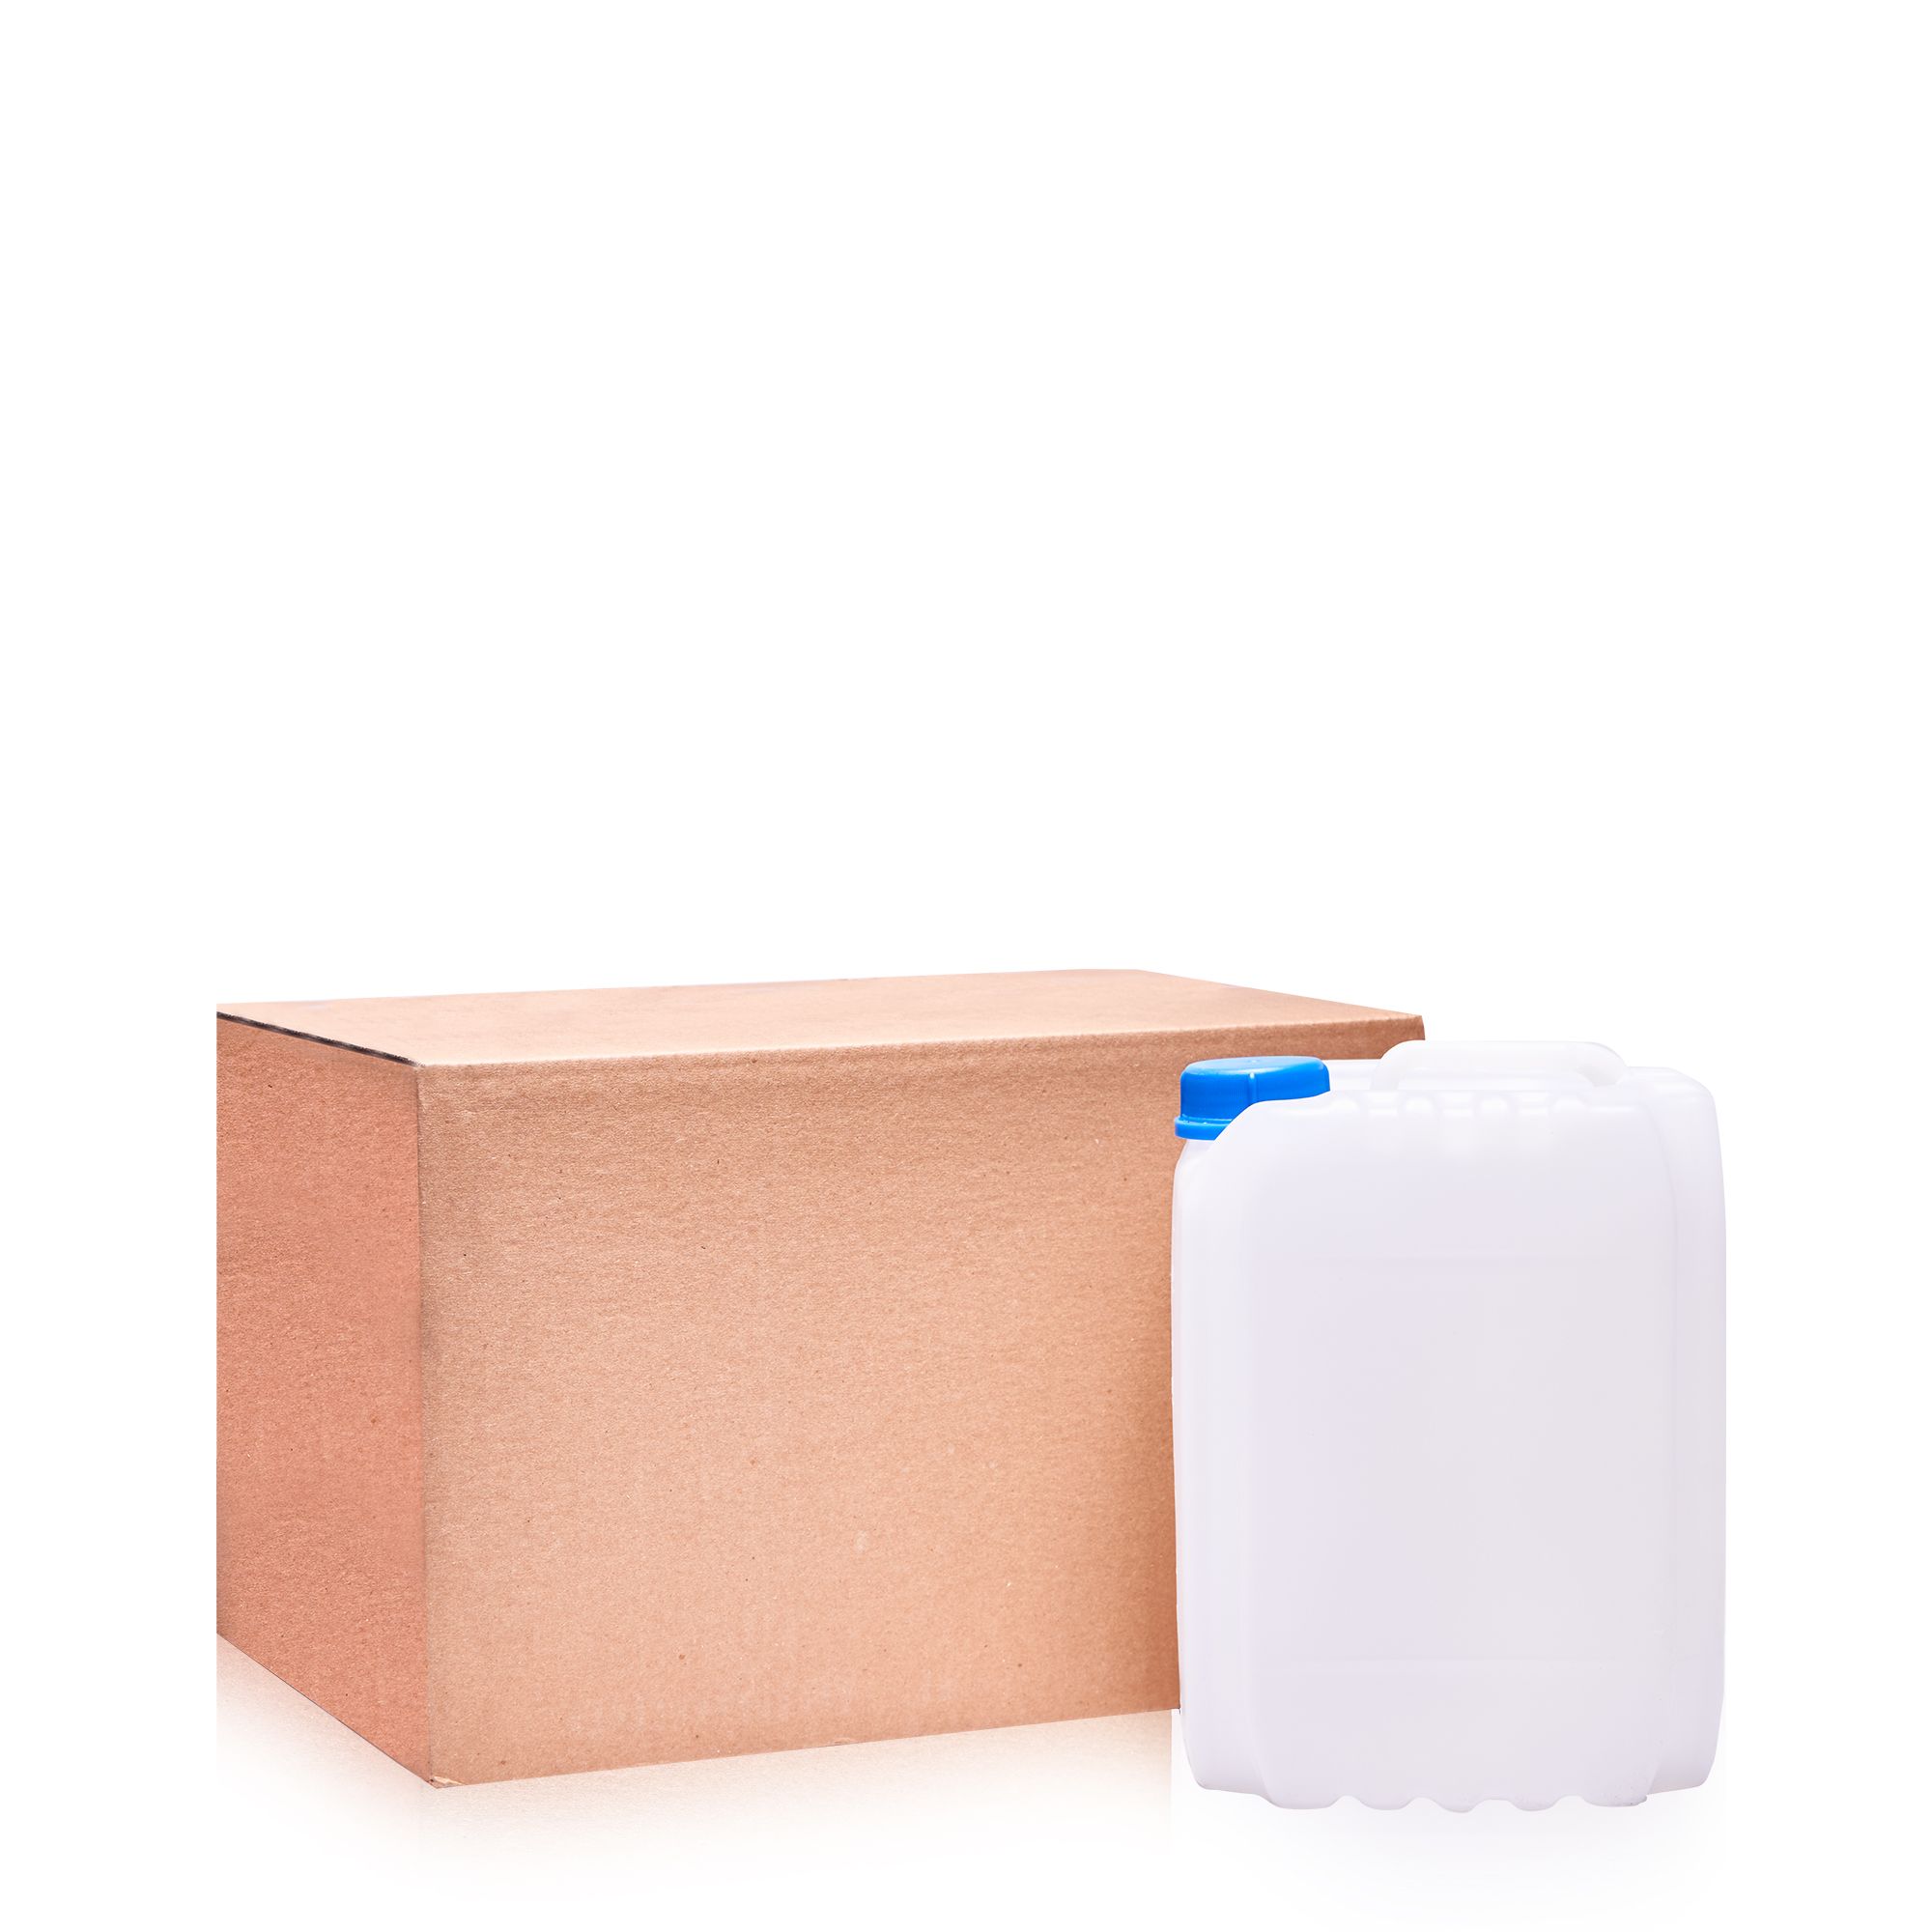 Растворитель Bi-Solv 1201 — канистра с картонной коробкой